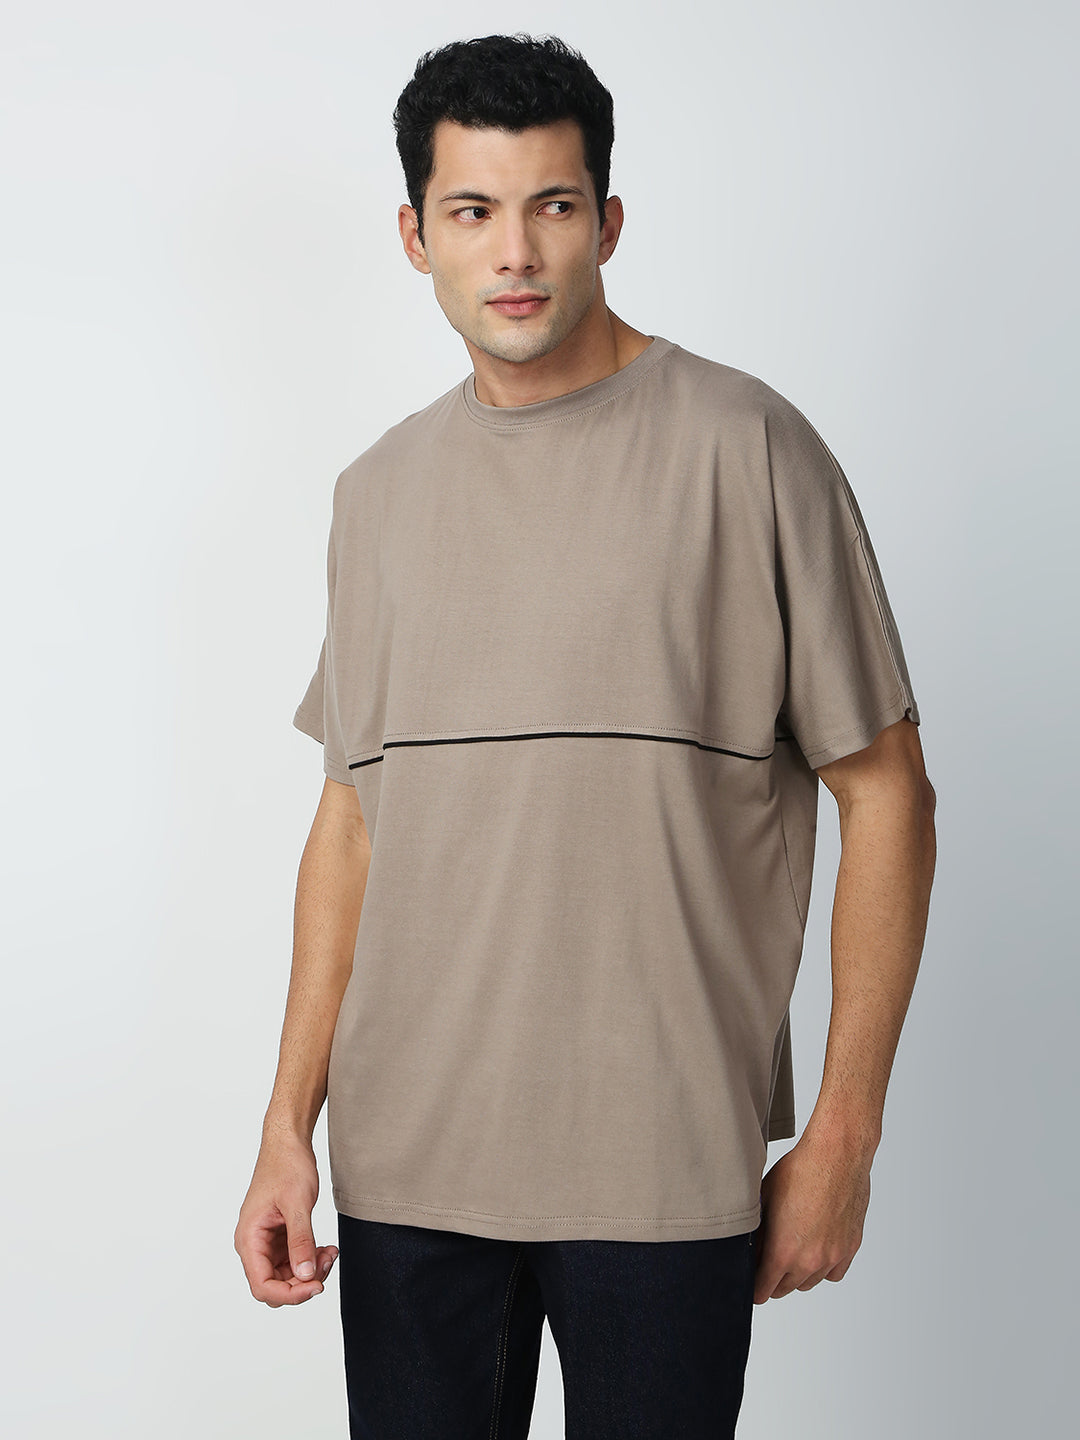 Buy Blamblack Men's Oversize Beige Color Round Neck Plain T-Shirt